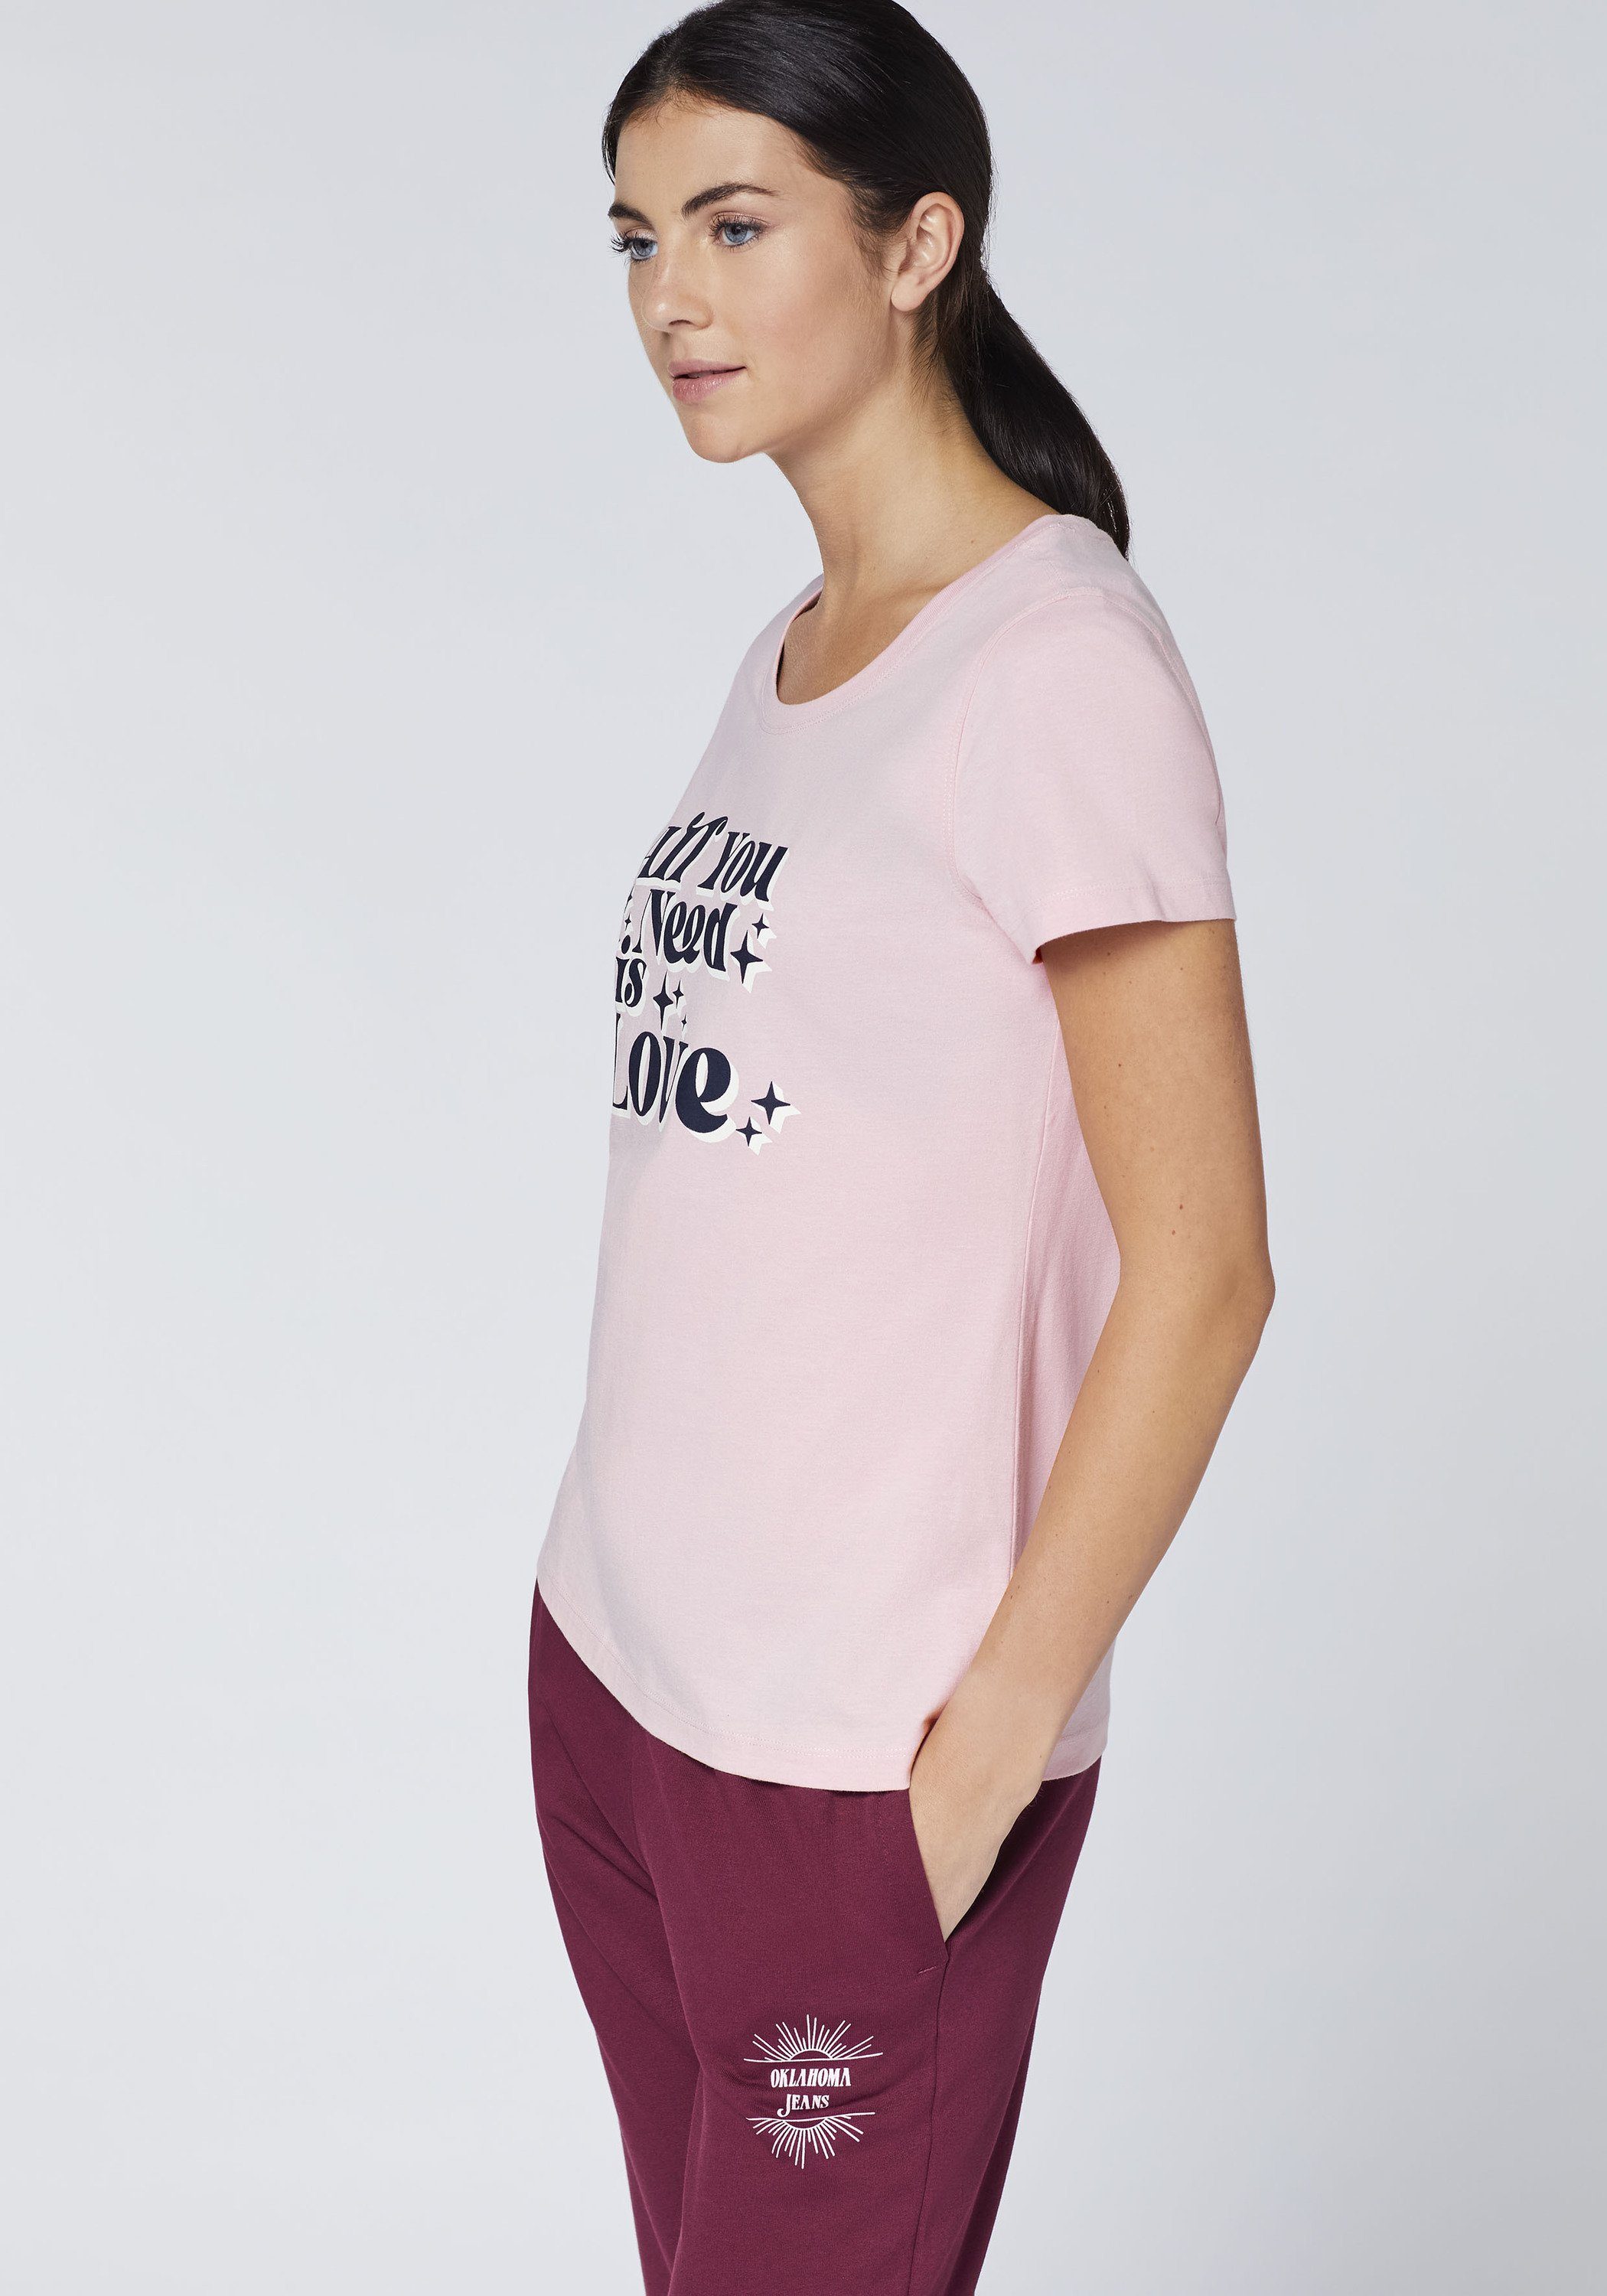 14-2305 Oklahoma Statement-Schriftzug Pink Jeans mit Nectar Print-Shirt